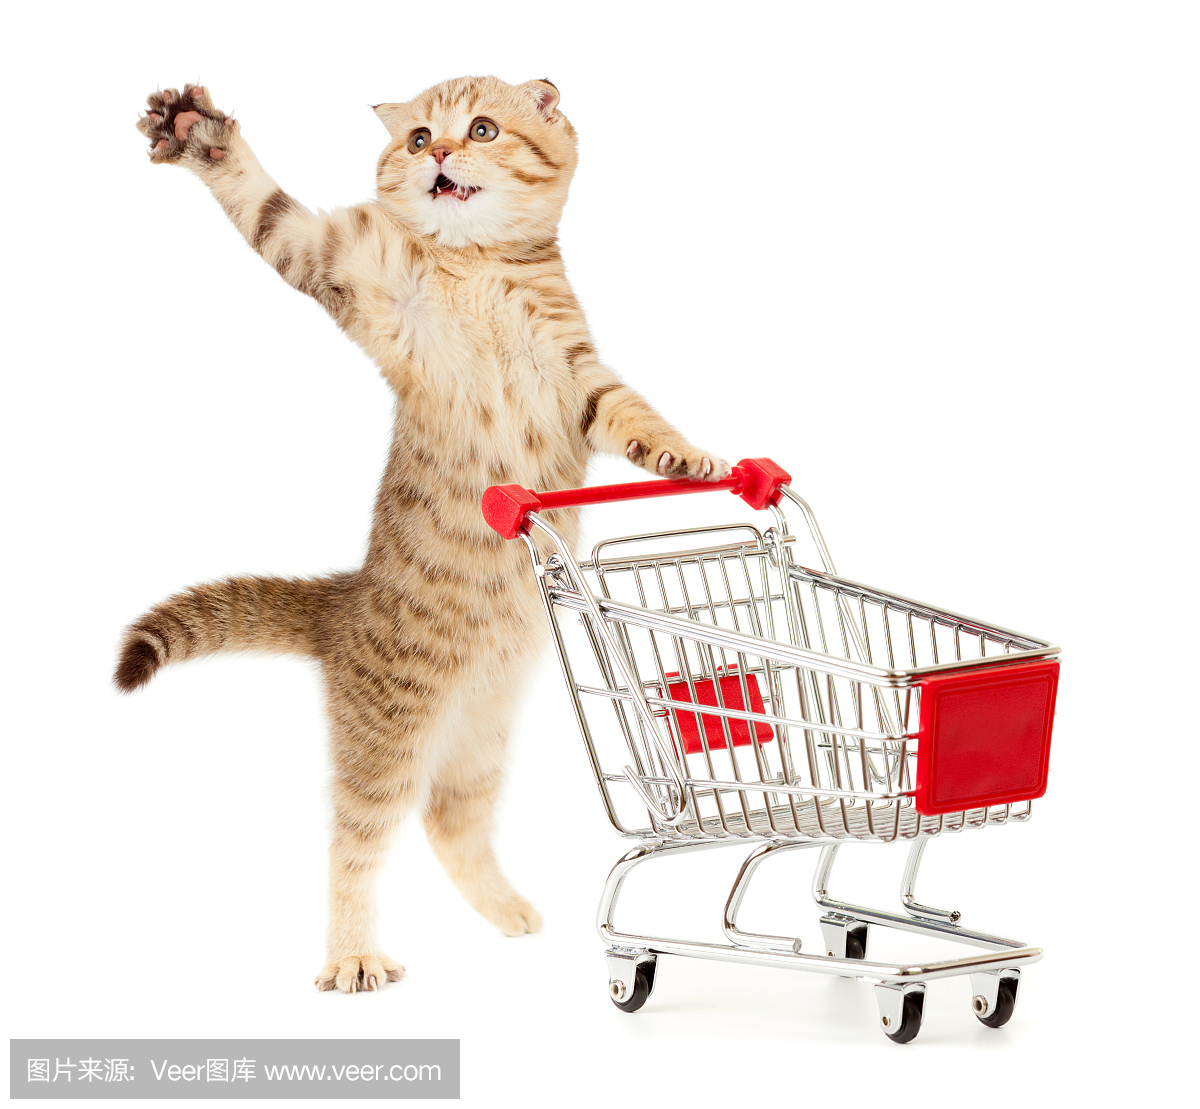 一只小猫,一只小型购物车,一只手臂在空中